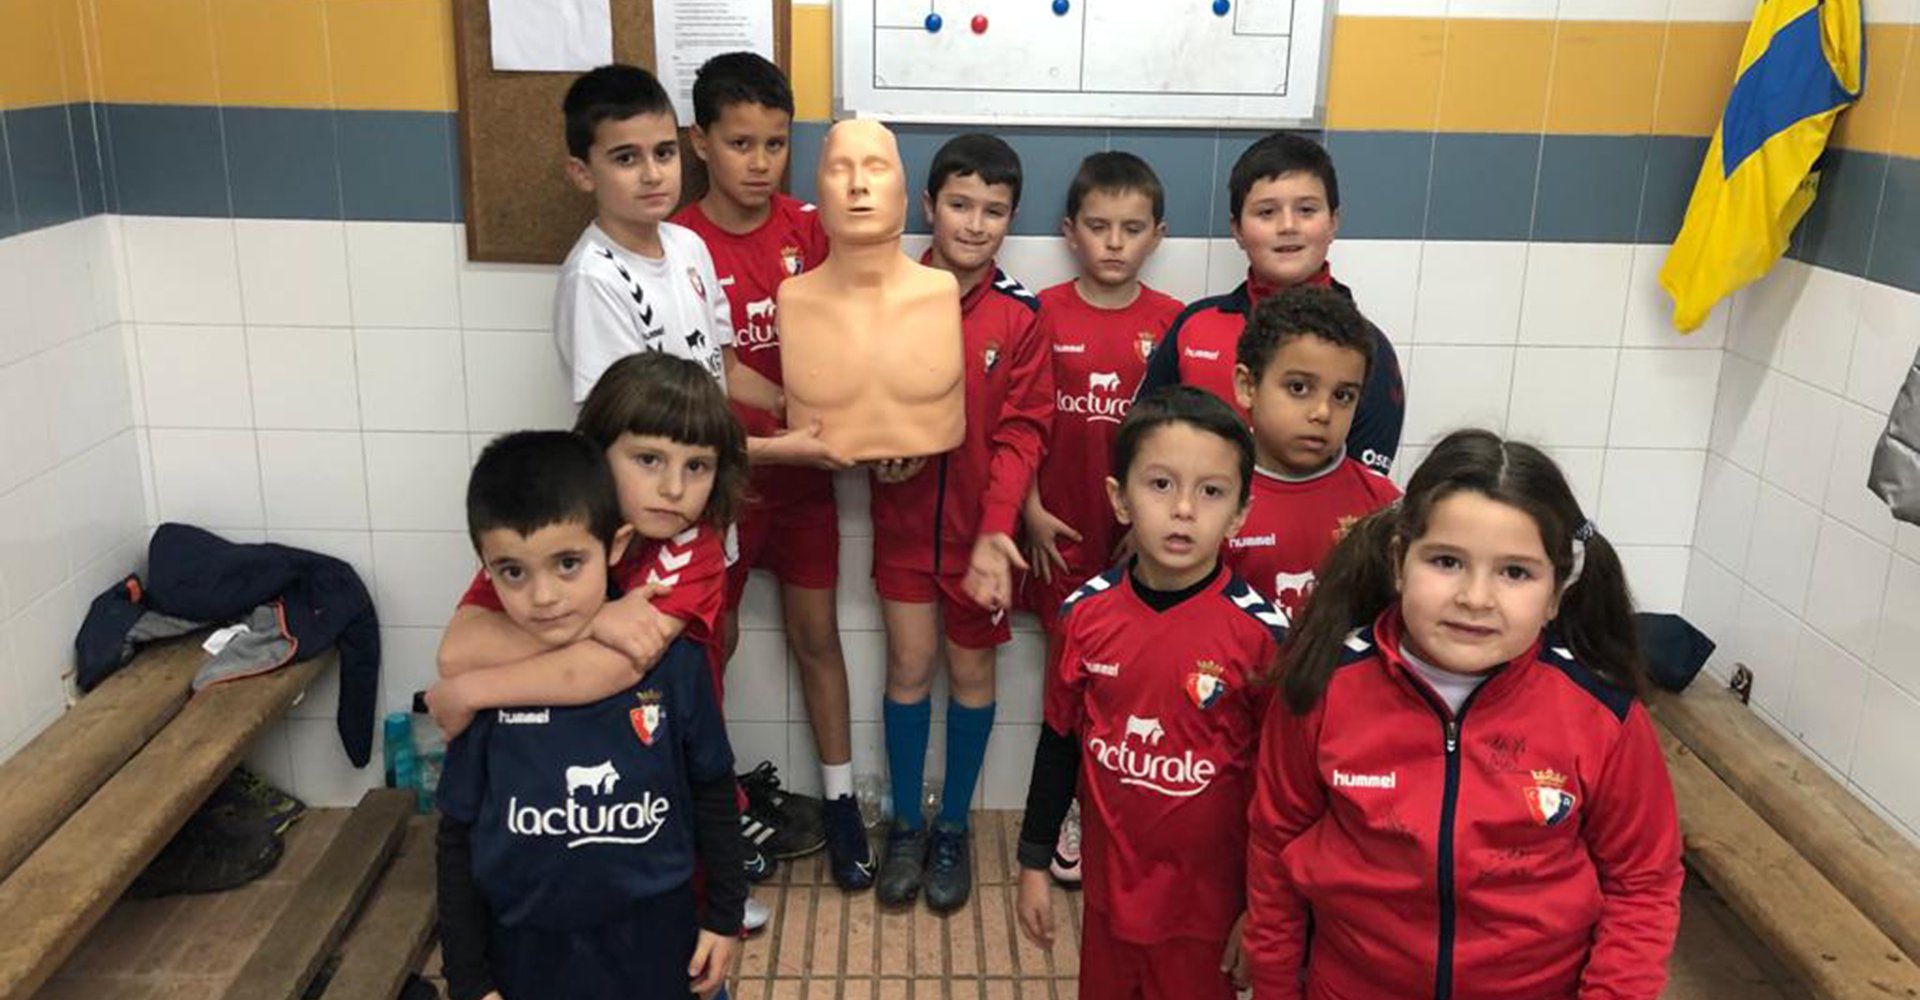 Los alumnos y alumnas de la escuela de fútbol reciben formación en primeros auxilios